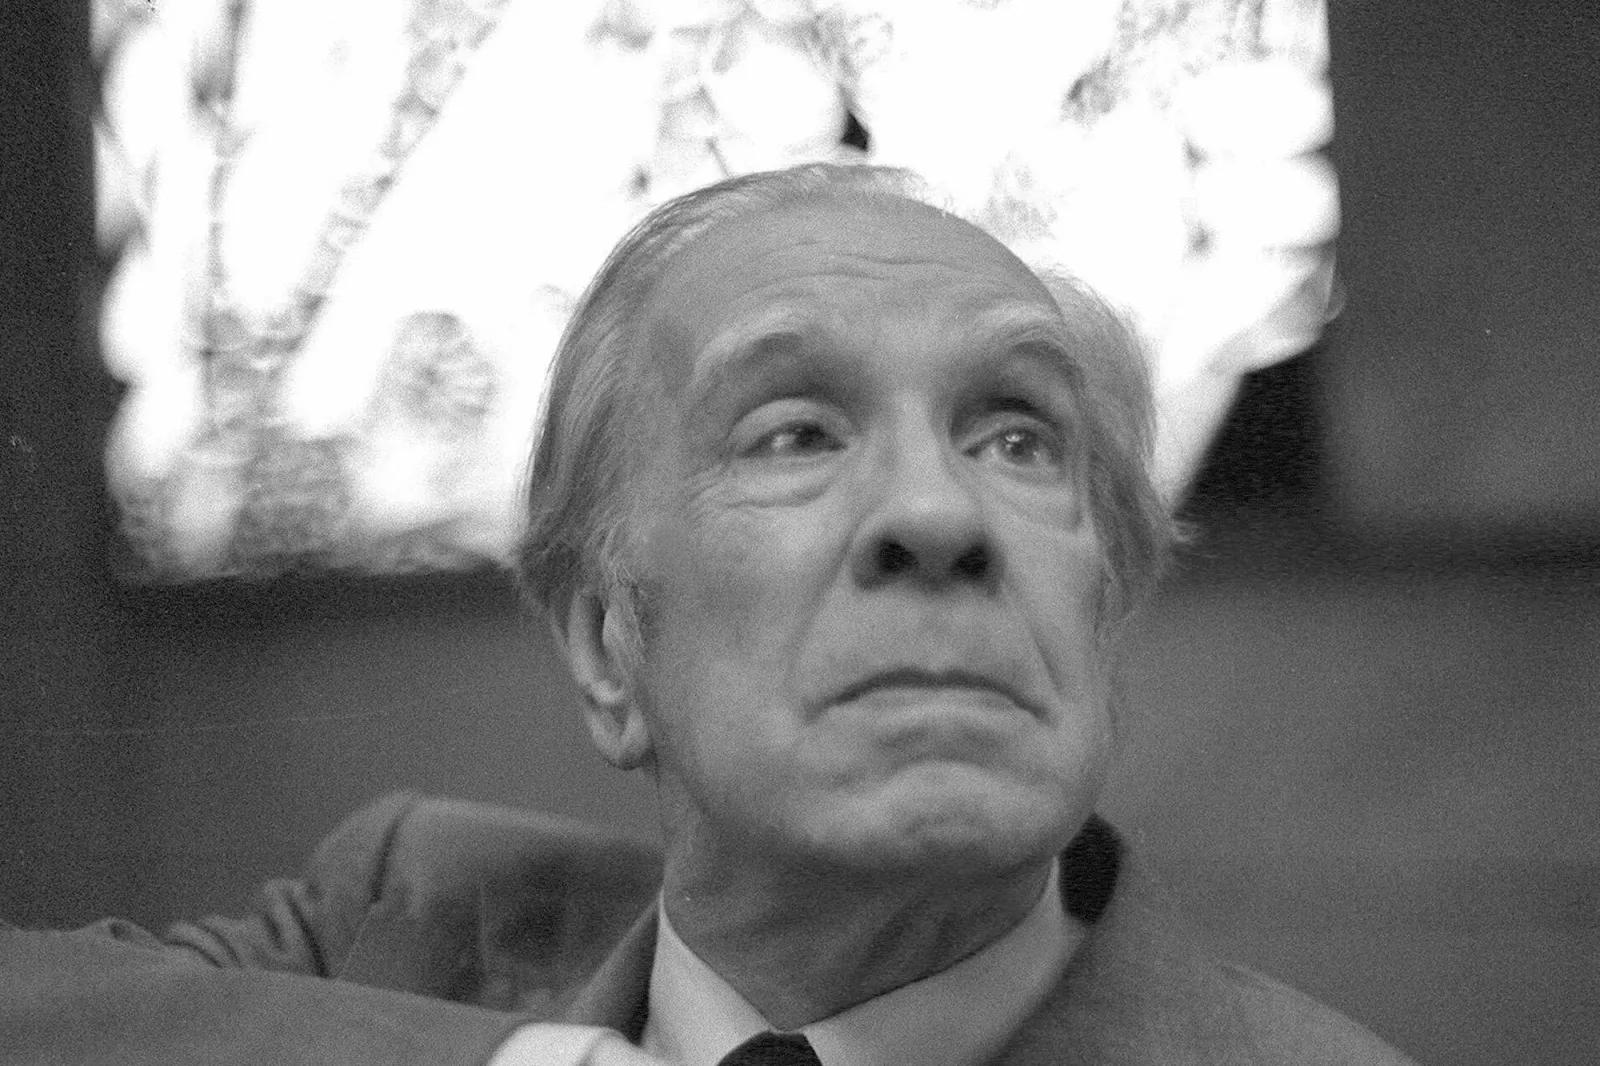 borges hay mas inteligencia en la bondad - Qué dice Borges sobre el amor